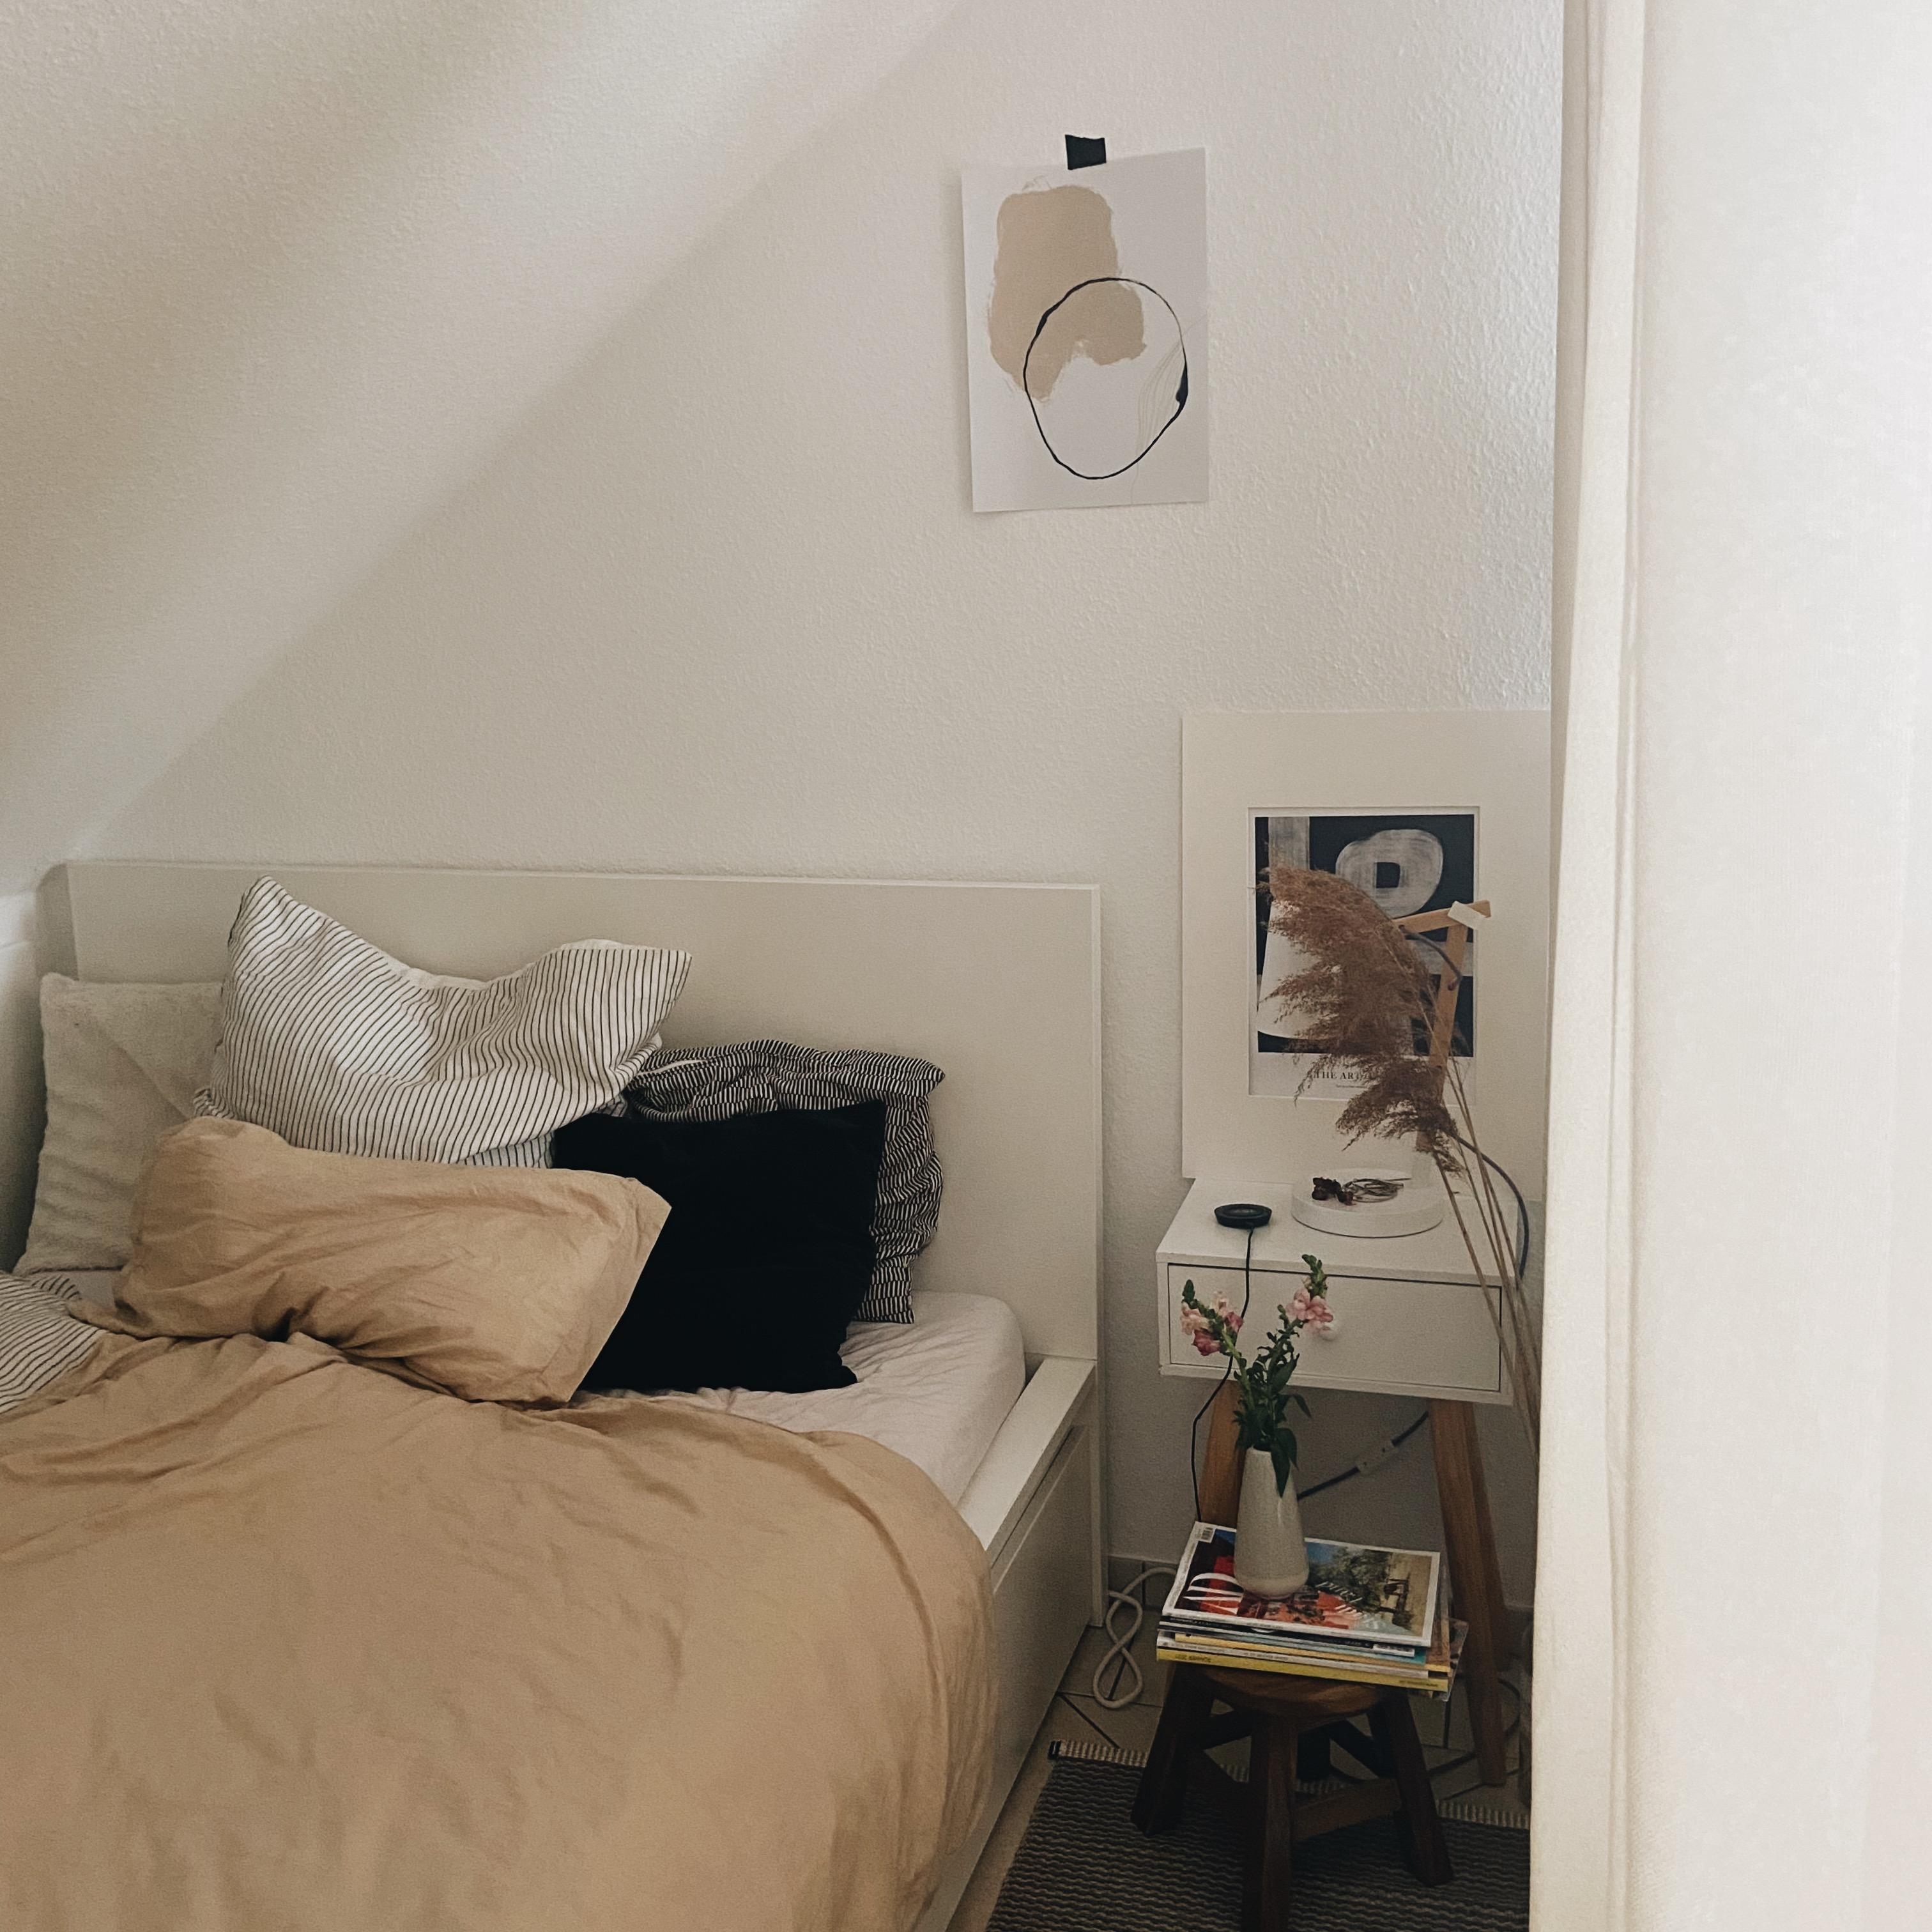 #schlafzimmer in Naturtönen ✨ #livingchallenge